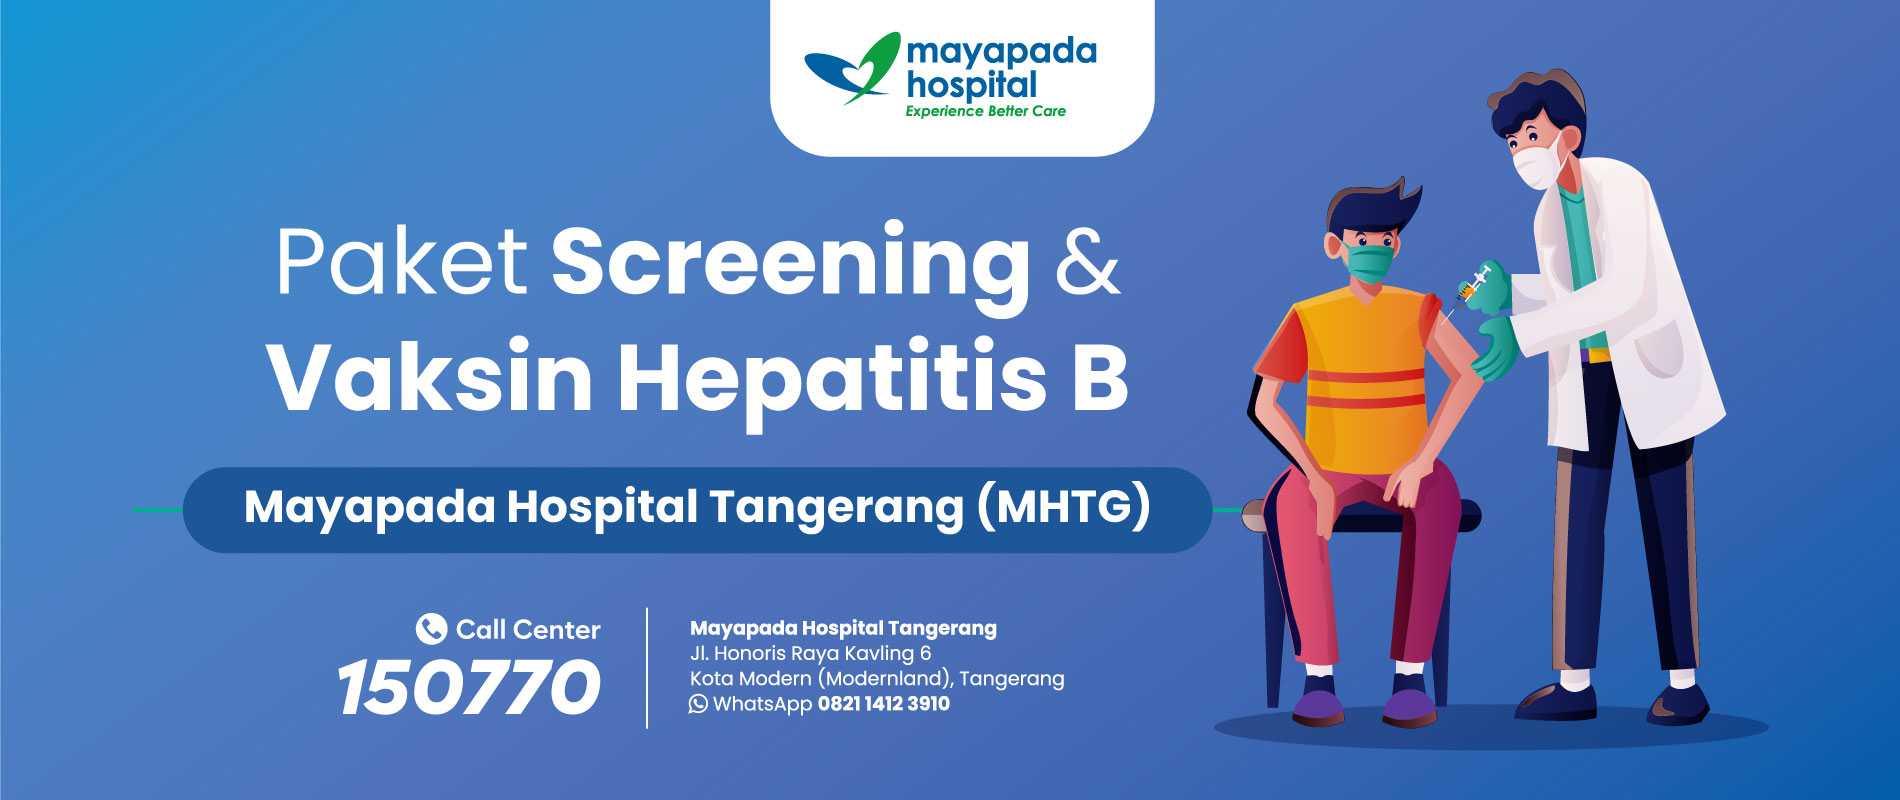 Promo Skrining & Vaksin Hepatitis B Mayapada Hospital Tangerang (MHTG) IMG